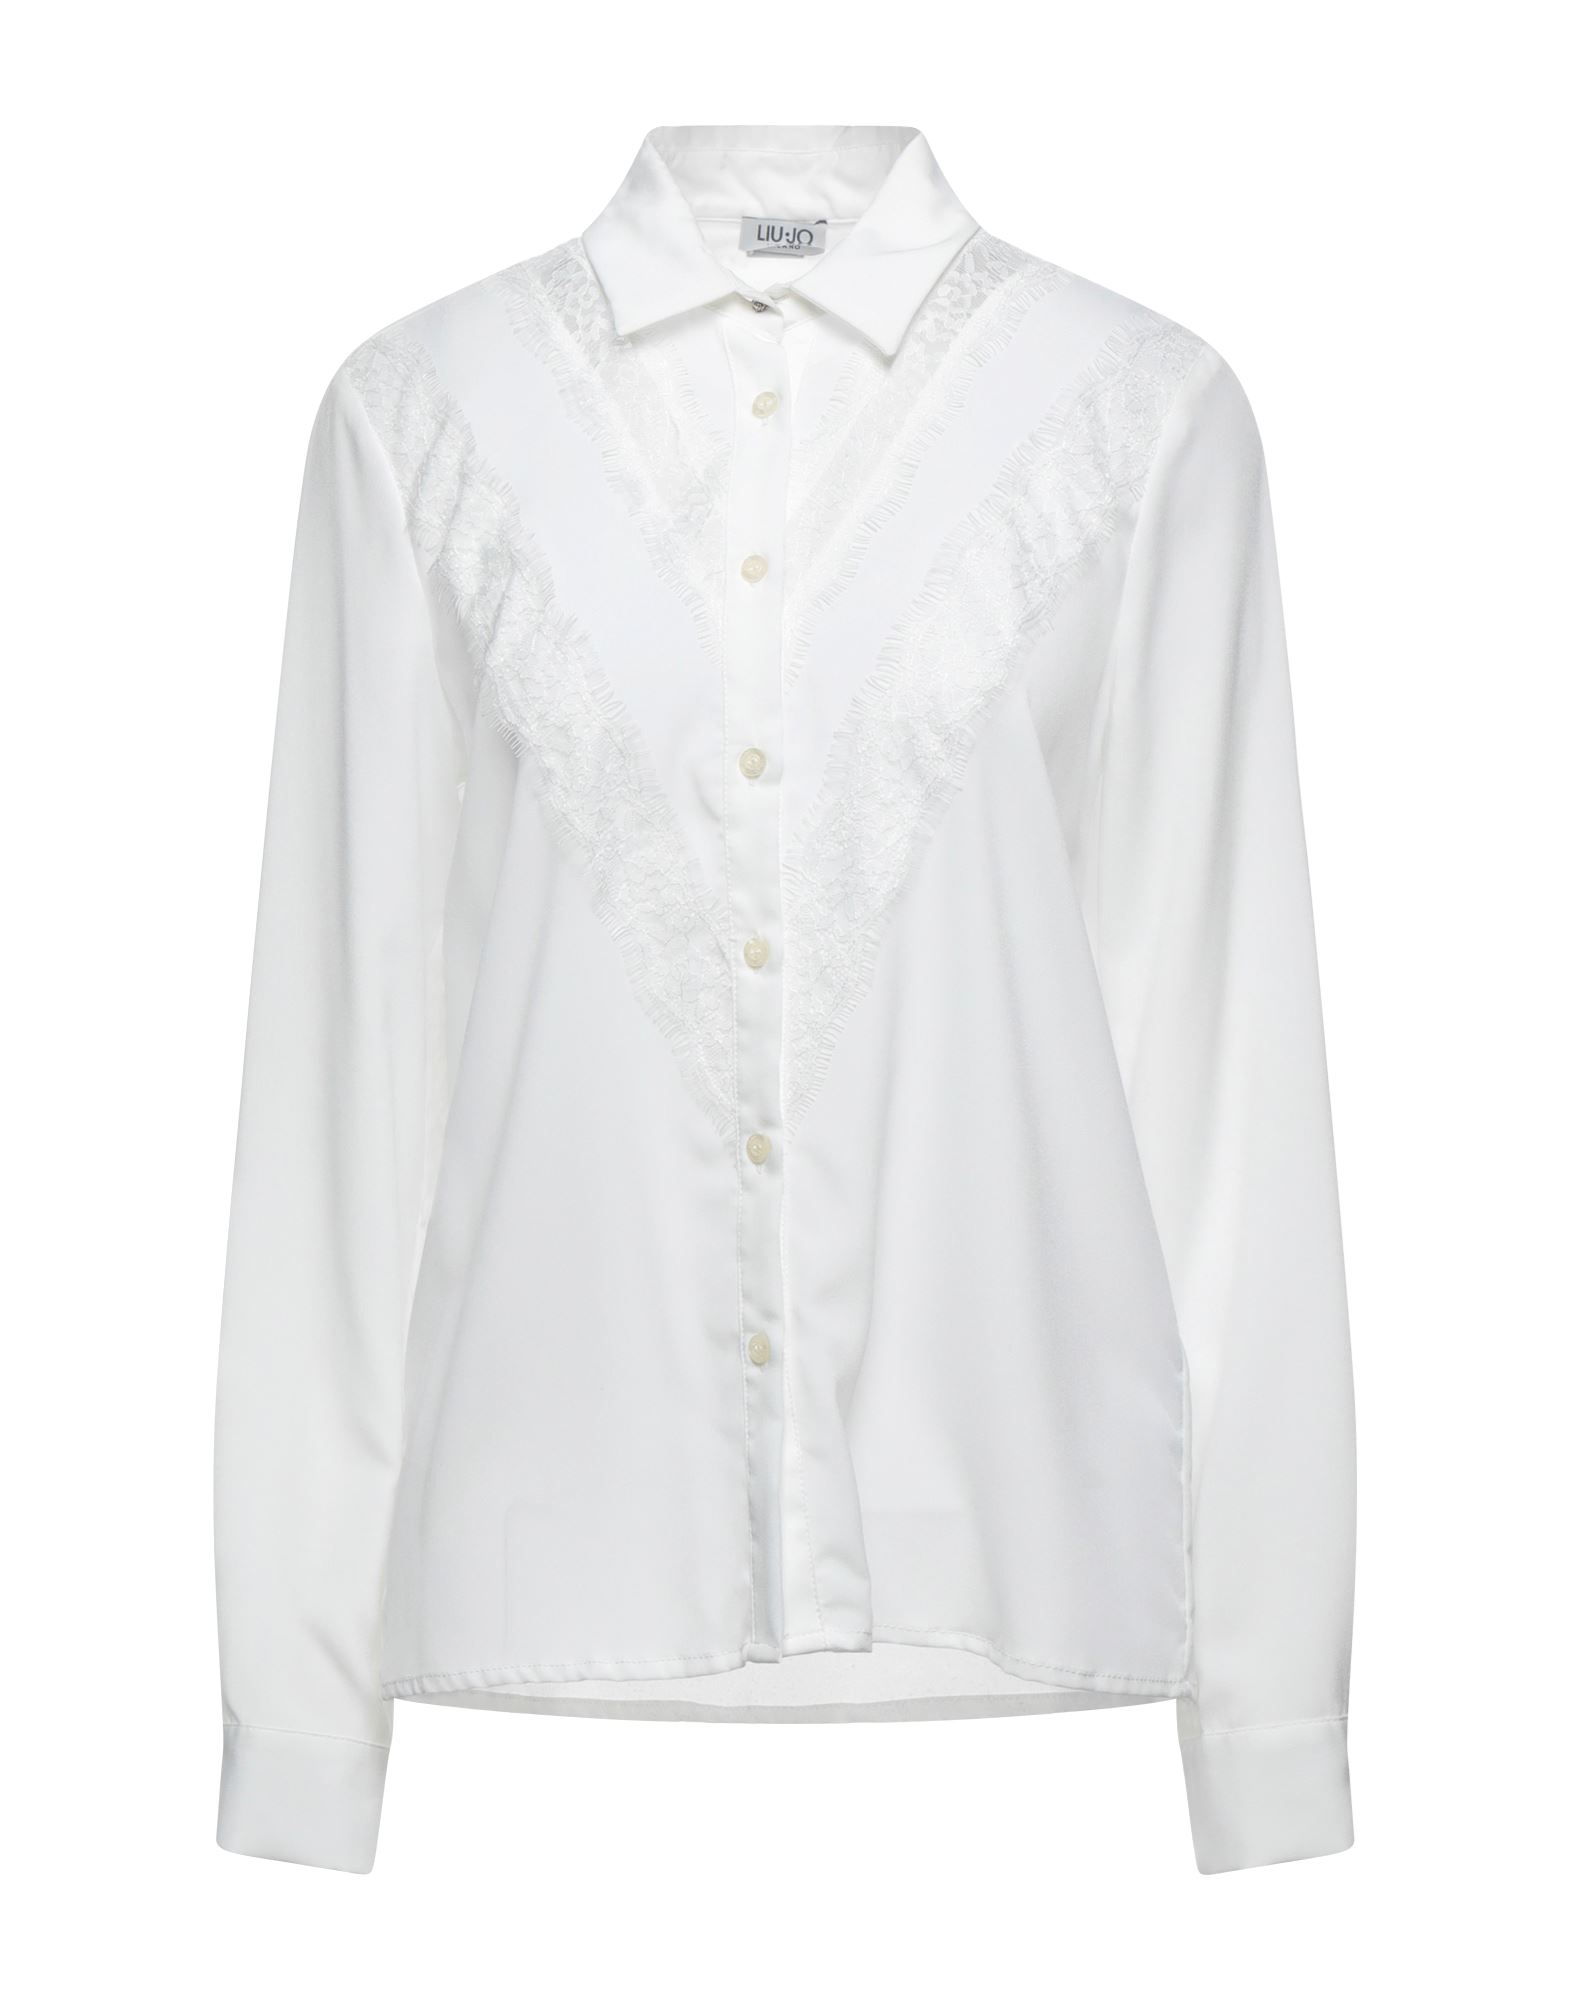 Liu •jo Shirts In White